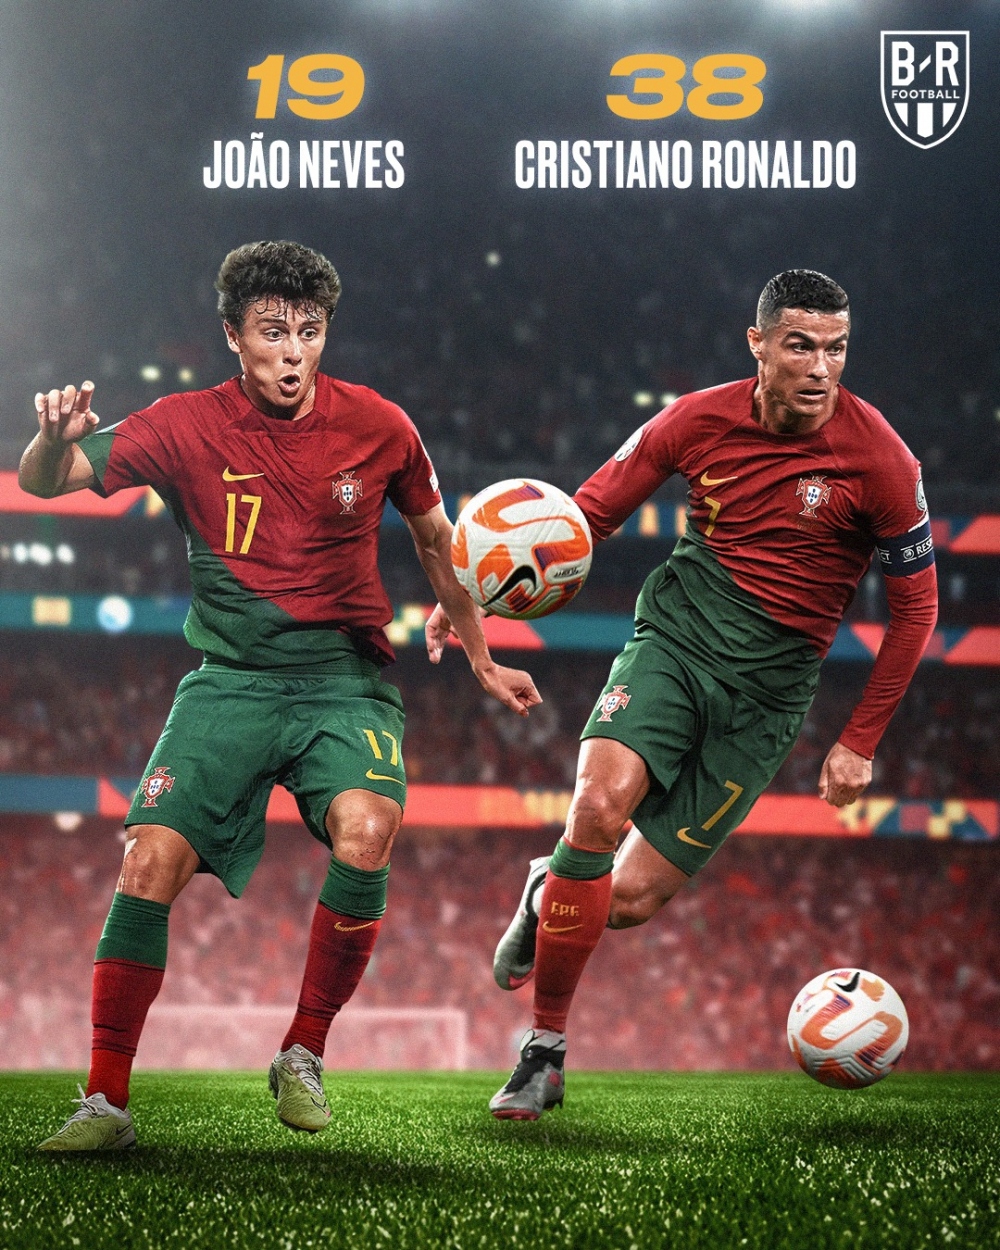 Cristiano Ronaldo - Joao Neves và những cặp cầu thủ chú - cháu ở cấp độ ĐTQG - Ảnh 1.